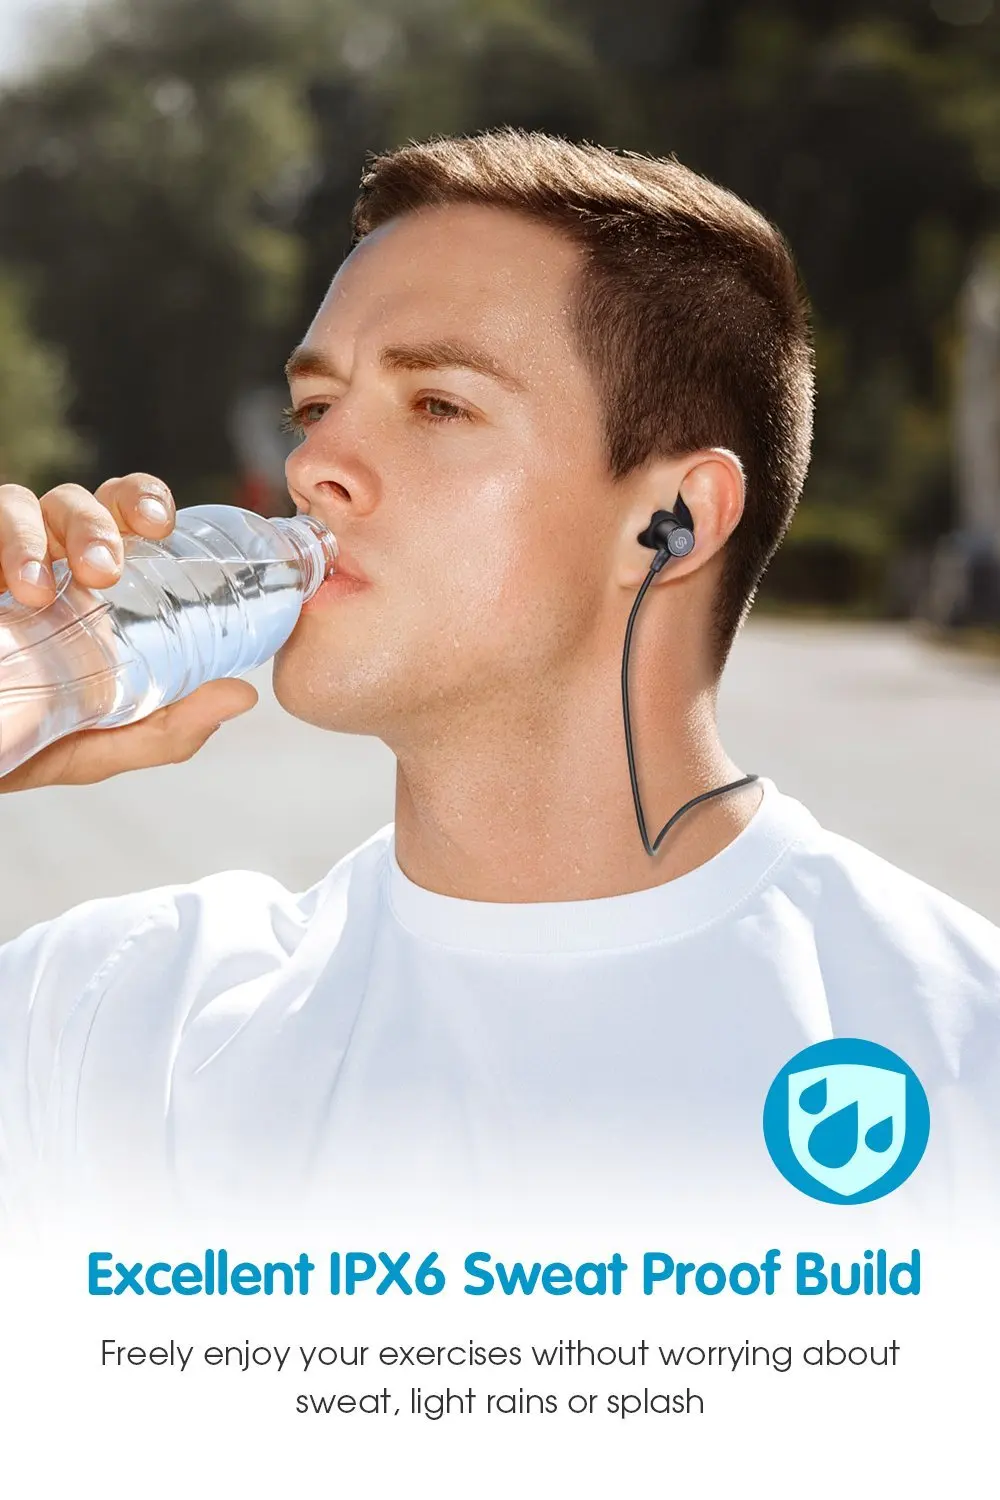 SoundPEATS магнитные басы беспроводные Bluetooth наушники-вкладыши спортивные IPX6 водонепроницаемые наушники с микрофоном для iPhone Q30 HD